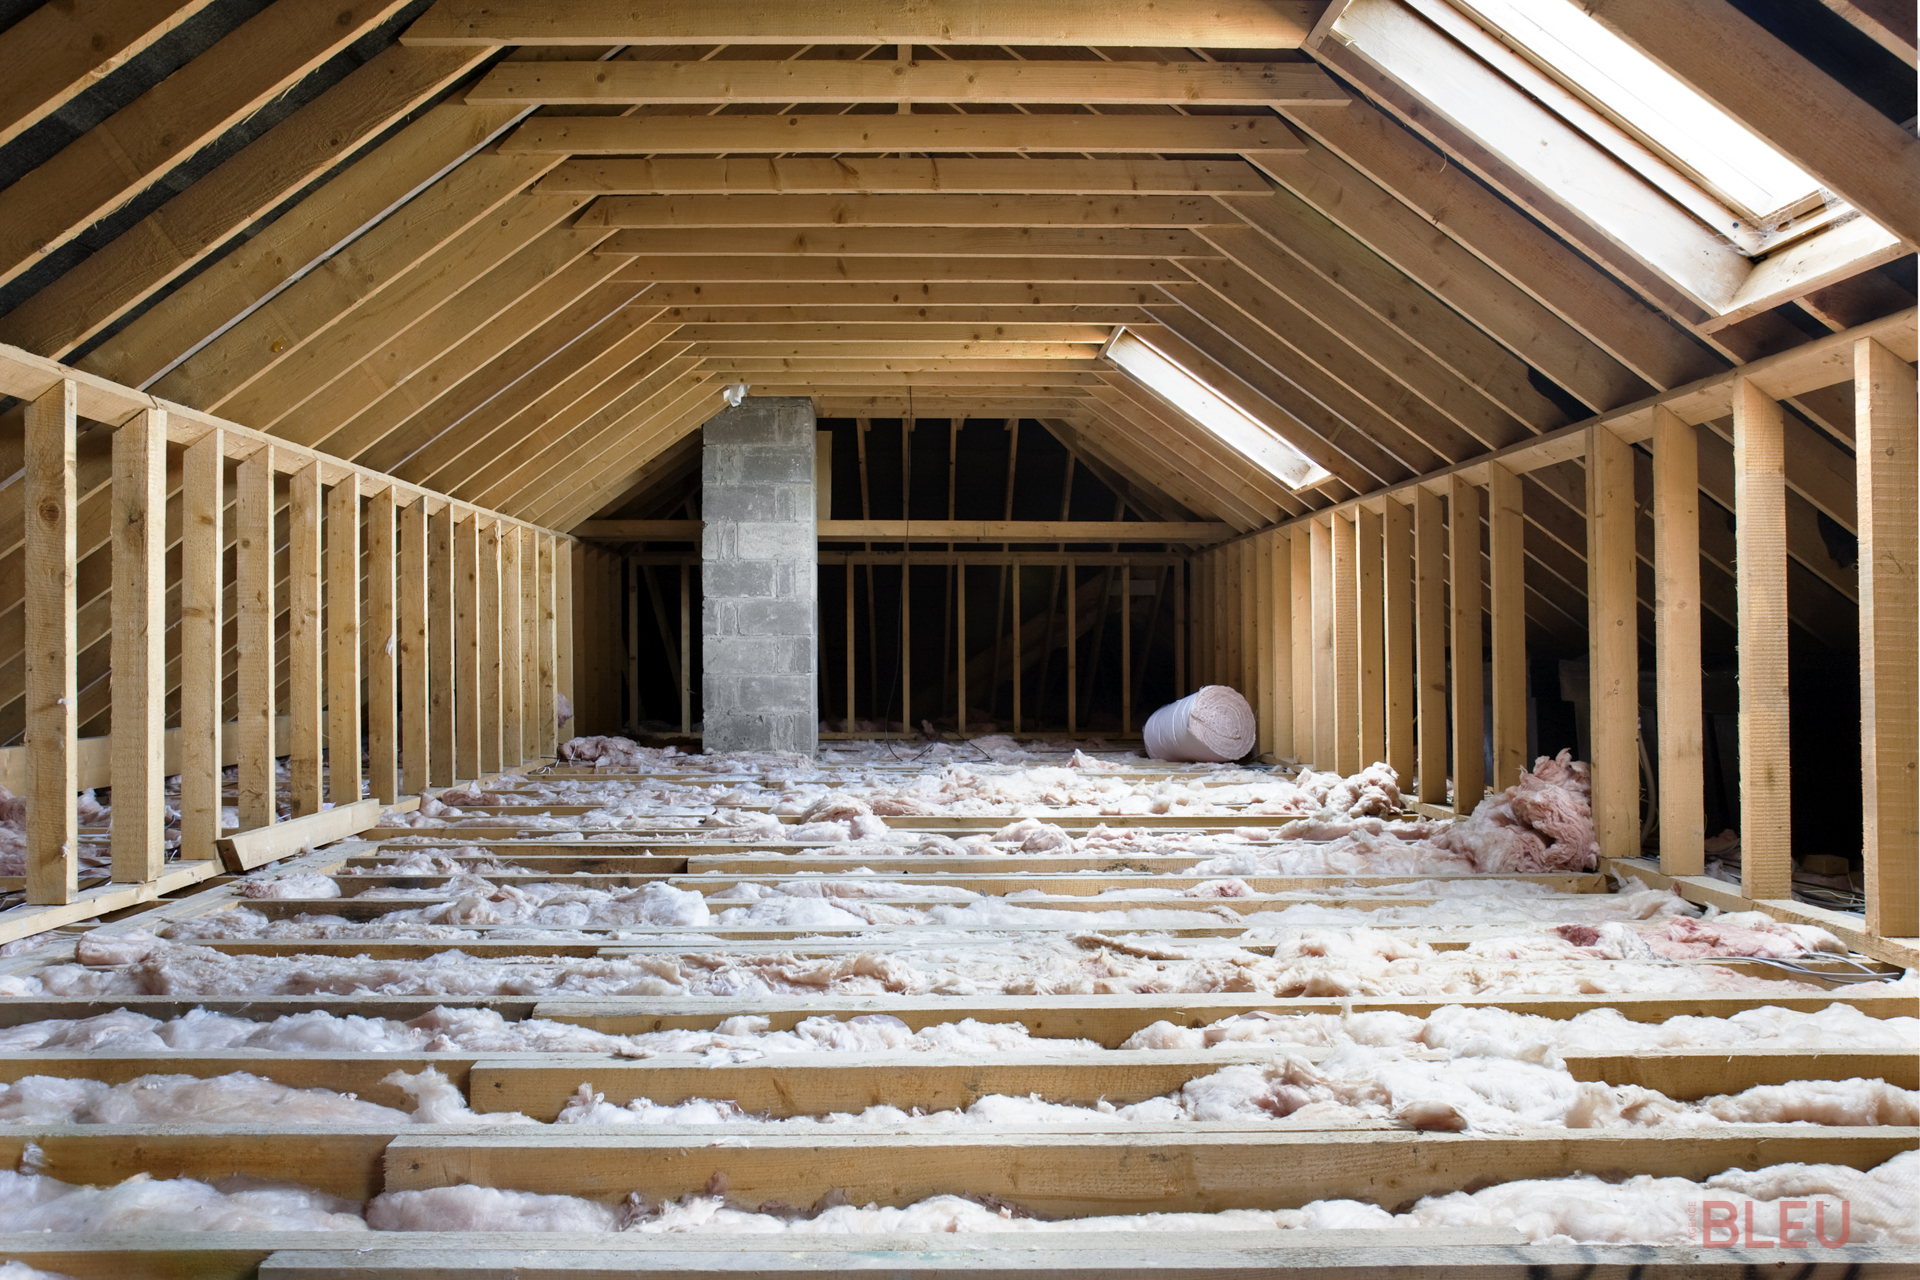 Pour limiter les déperditions énergétiques coûteuses, concentrez-vous sur l'isolation des contours de votre maison. Les pertes de chaleur sont courantes et augmentent vos factures. Selon l'ADEME : 25 à 30 % des pertes se font par les toits ; 20 à 25 % des déperditions passent par les murs ; 7 à 10 % des fuites se font par les sols ; 10 à 15 % des gaspillages se font par les fenêtres. Effectuez les travaux d'isolation en début de rénovation et calculez précisément vos besoins de chauffage. Trouvez l'appareil idéal qui s'intégrera parfaitement à votre propriété.